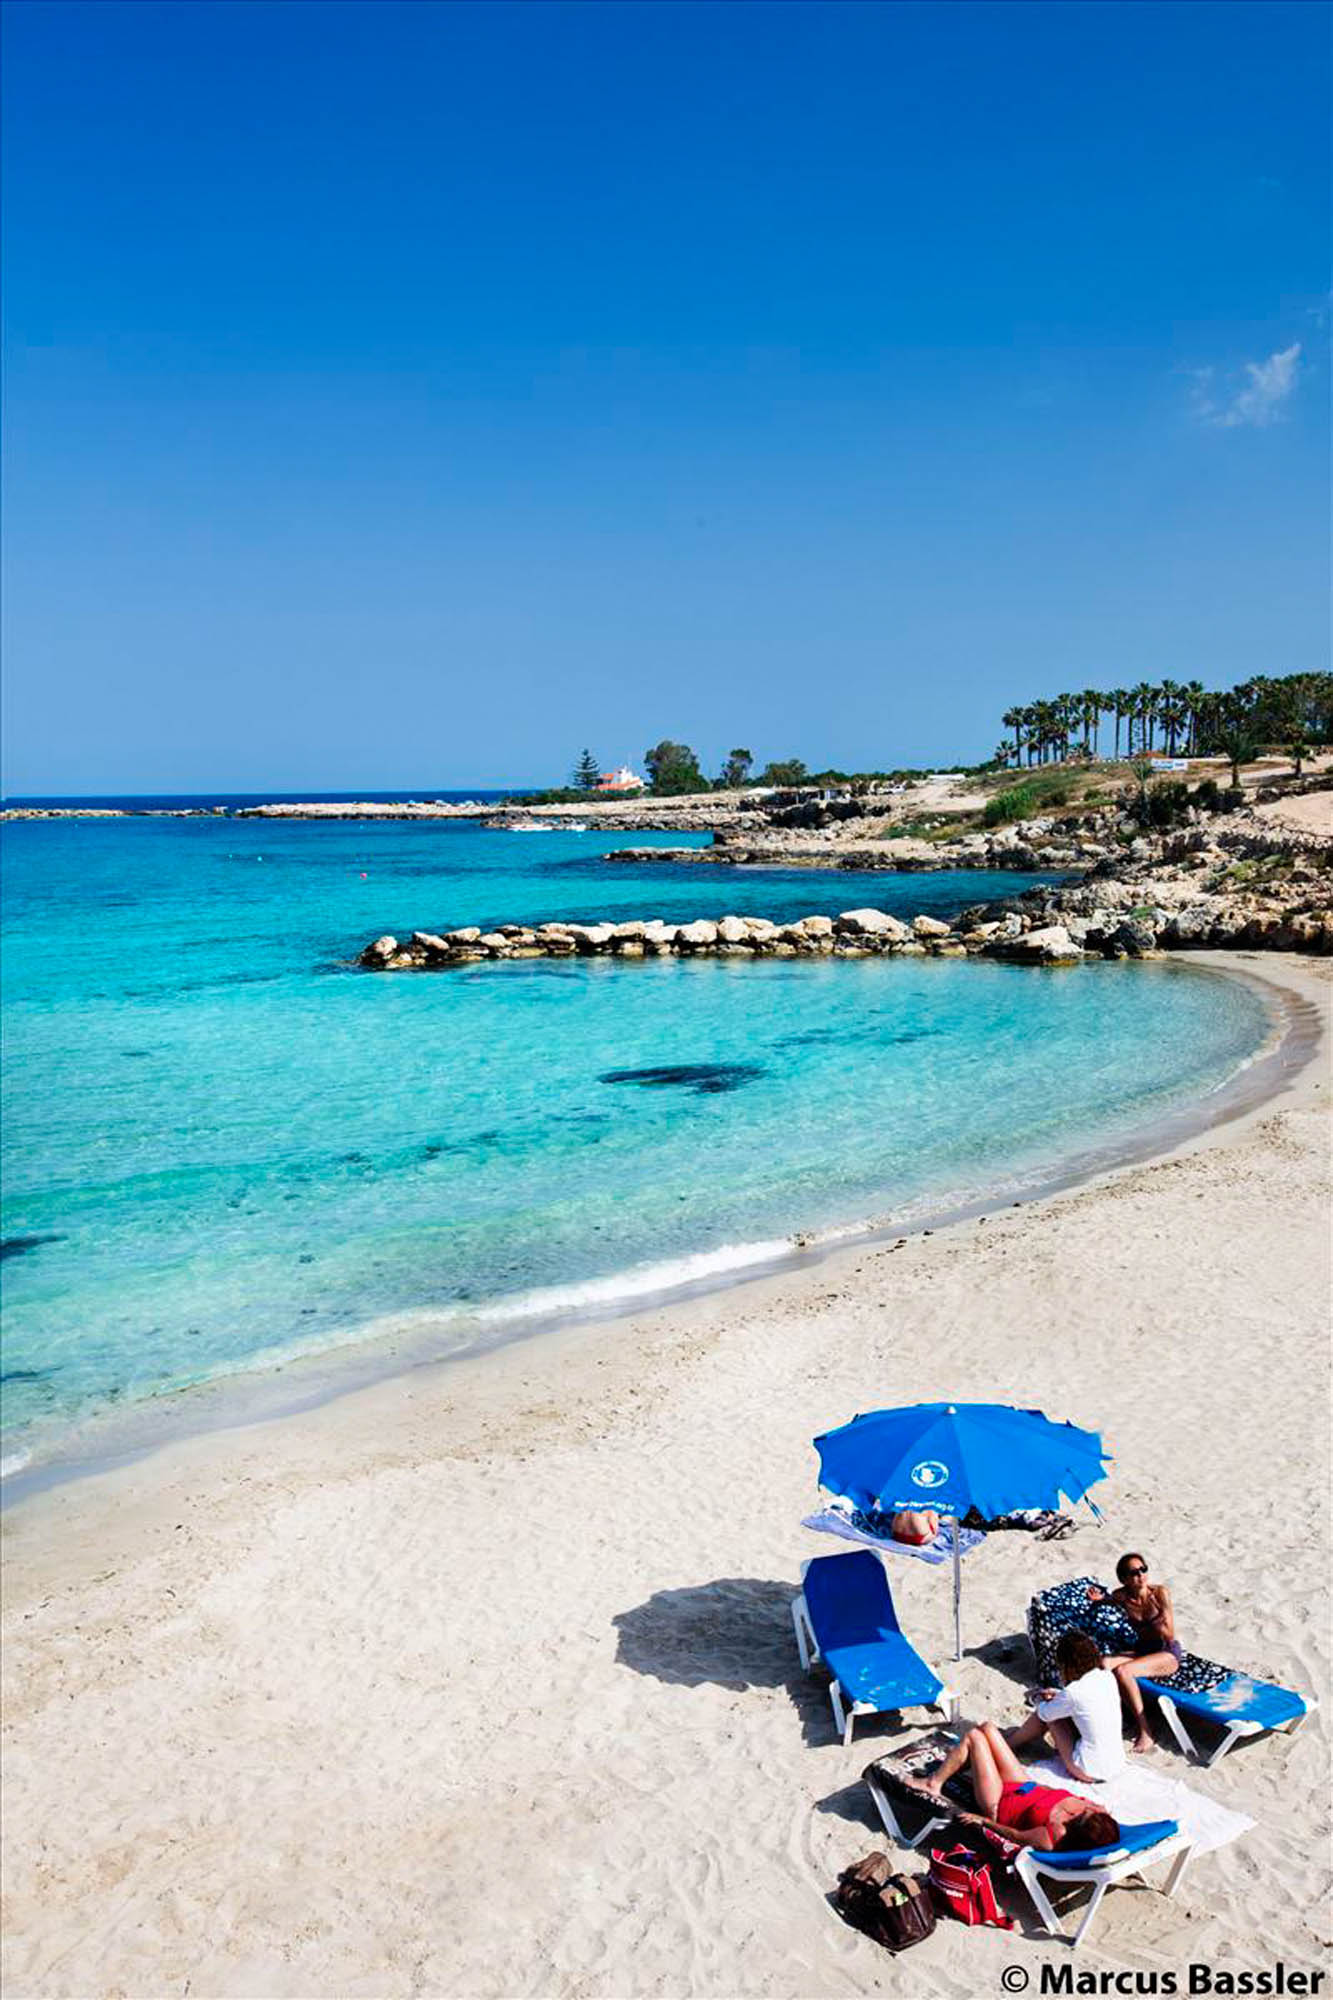 jedna z plaż na cyprze, widok z daleka, piękna plaża i morze